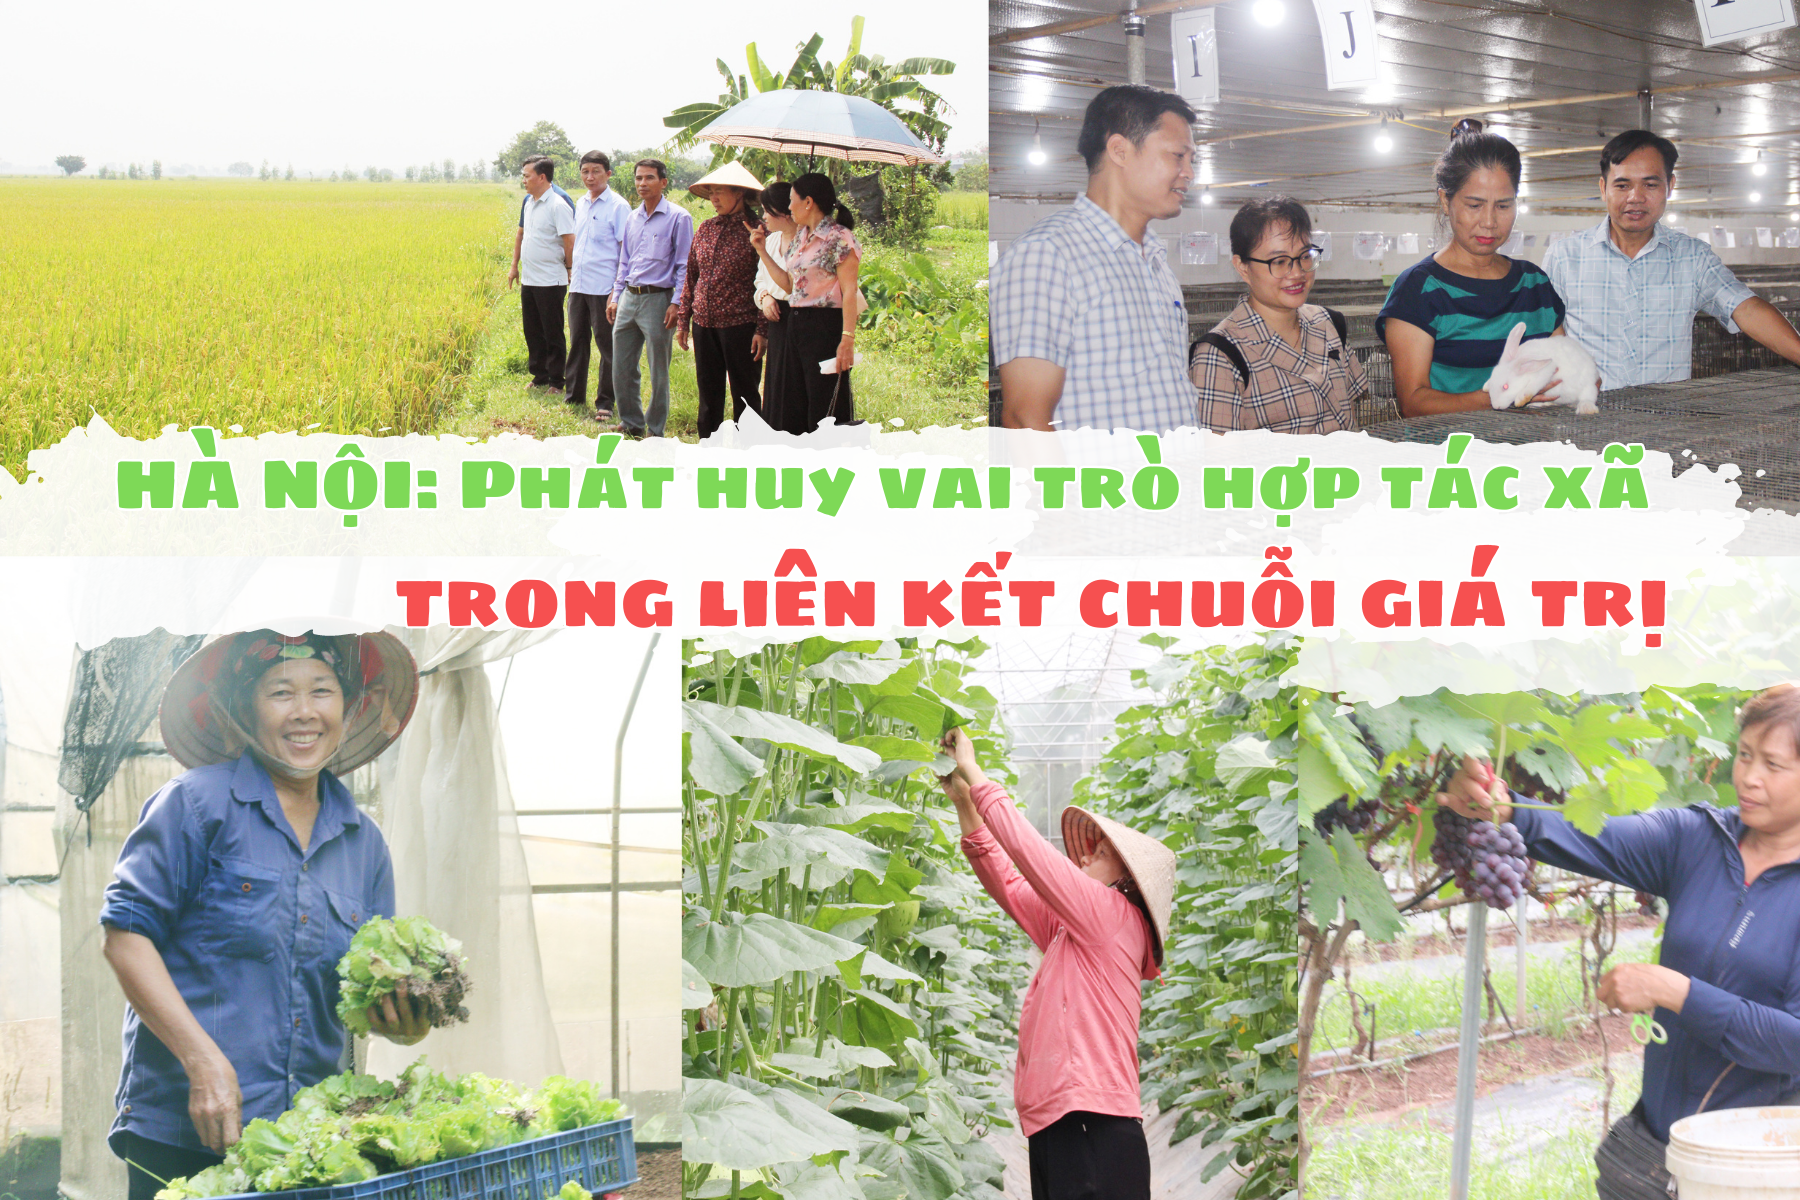 Hà Nội: Phát huy vai trò hợp tác xã trong liên kết chuỗi giá trị